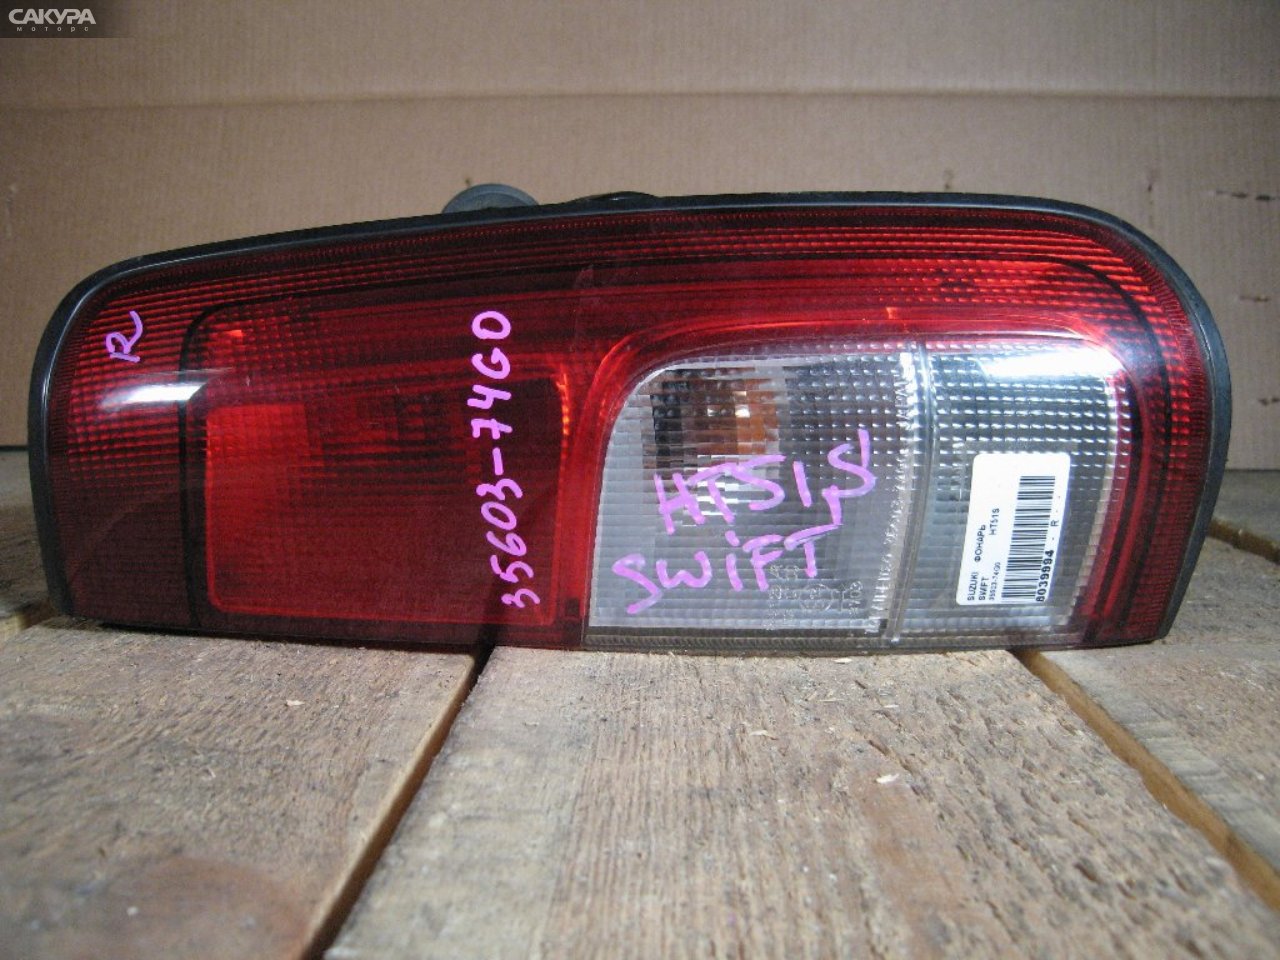 Фонарь стоп-сигнала правый Suzuki Swift HT51S 35603-74G0: купить в Сакура Абакан.